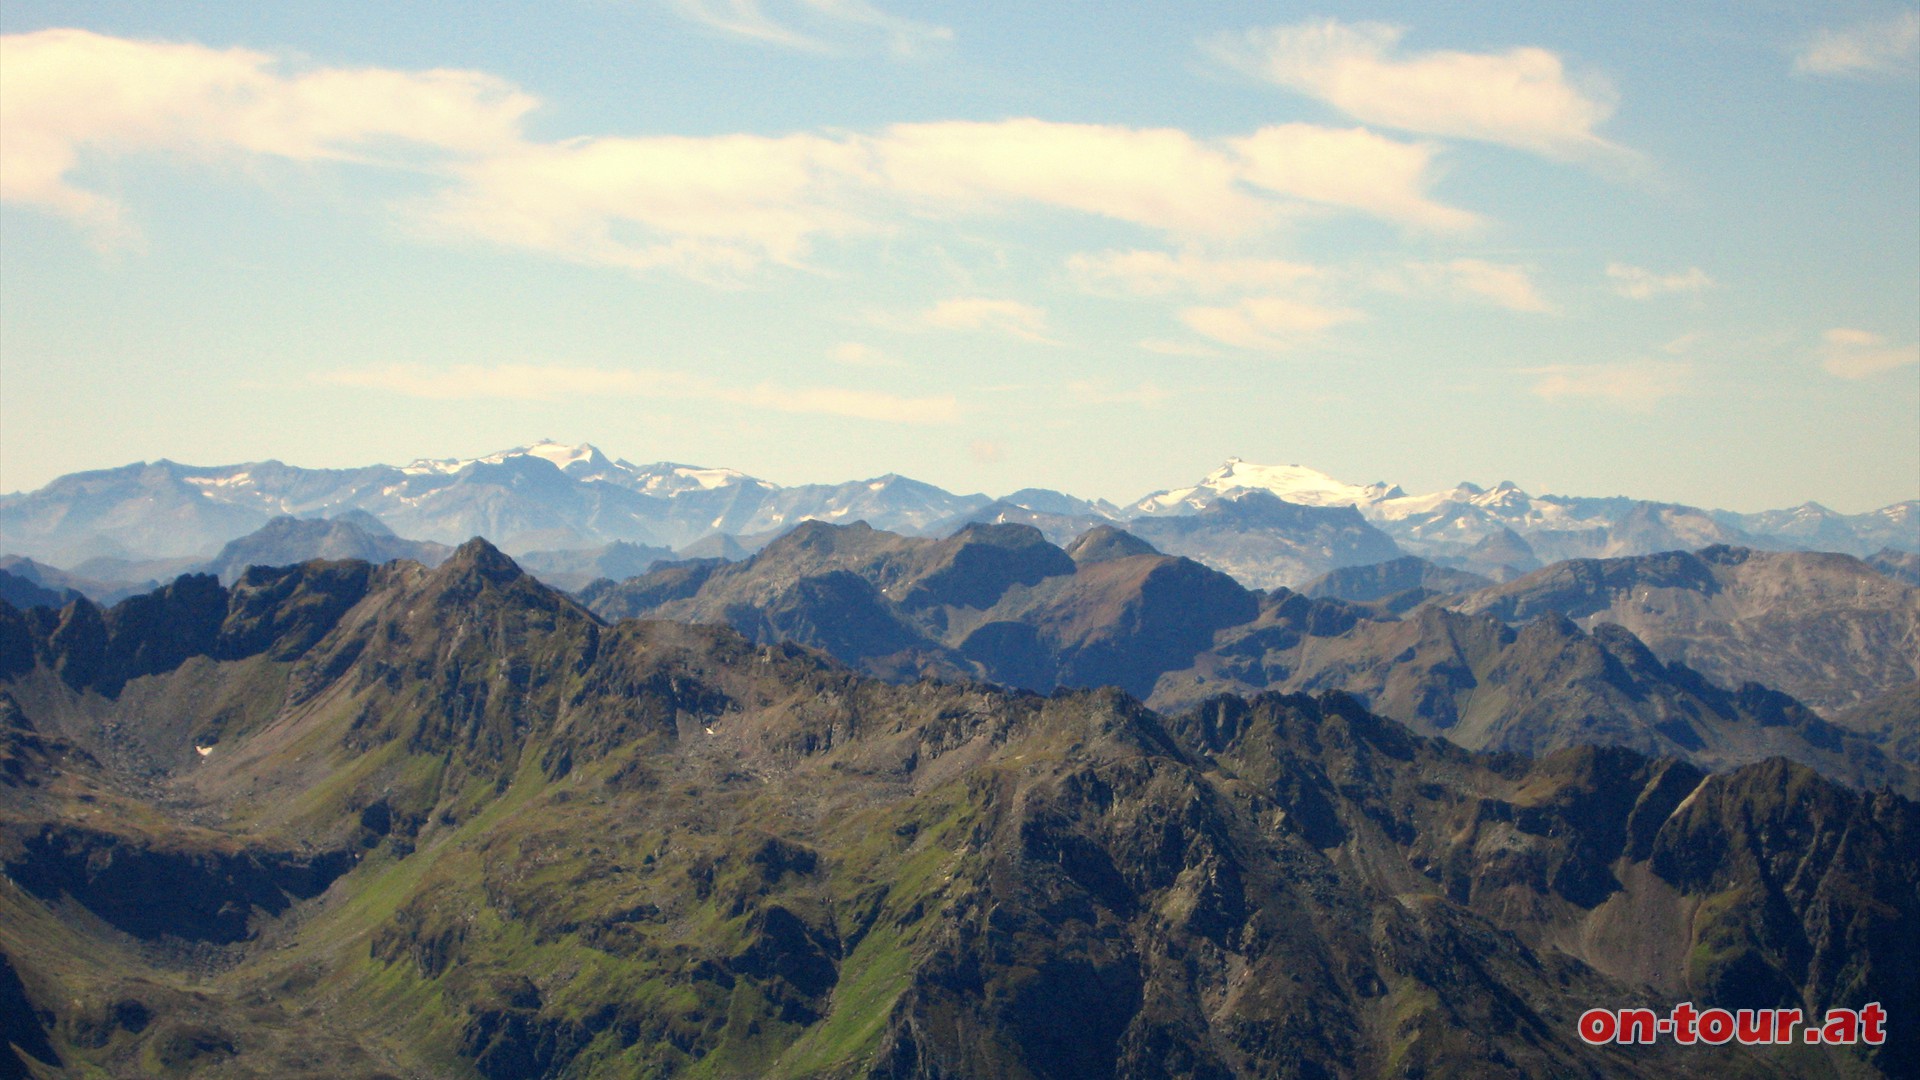 Sdwestlich im Hintergrund, in den Hohen Tauern, die Hochalmspitze (links) und der Ankogel (rechts).